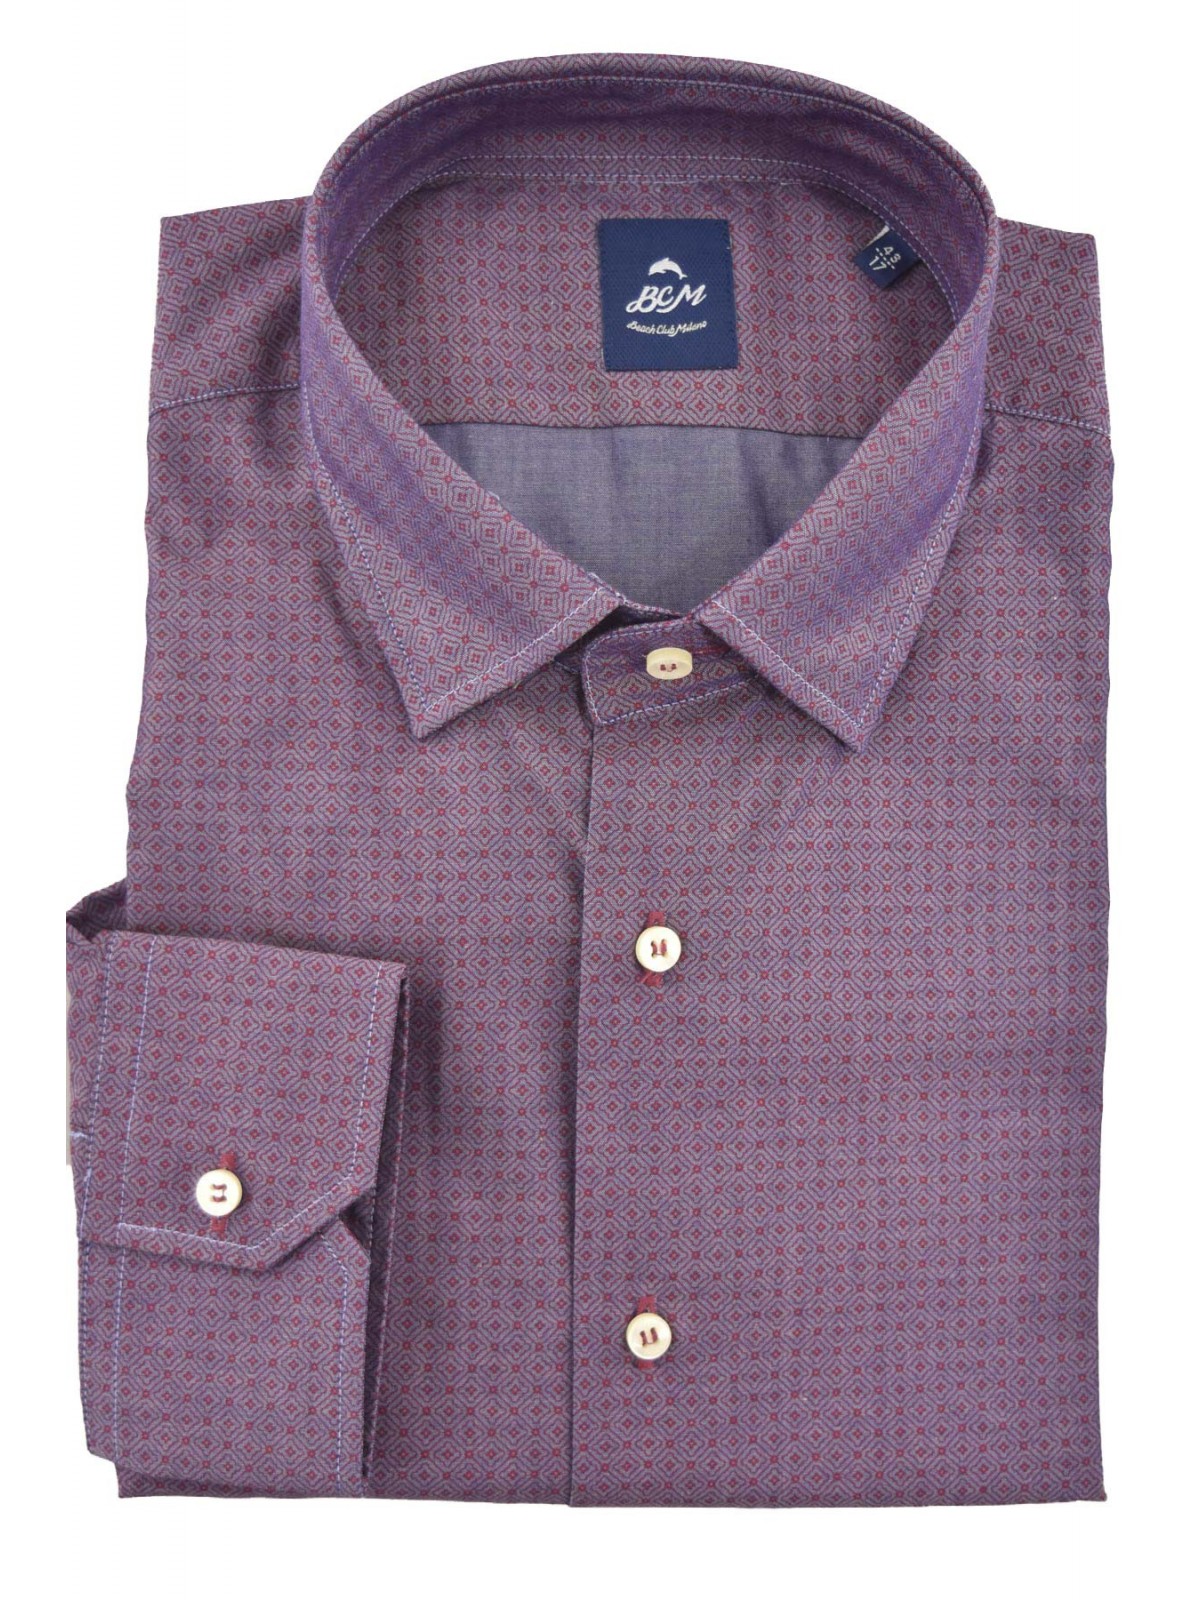 Herren Casual SlimFit Bordeaux Hemd mit kleinem geometrischem Muster